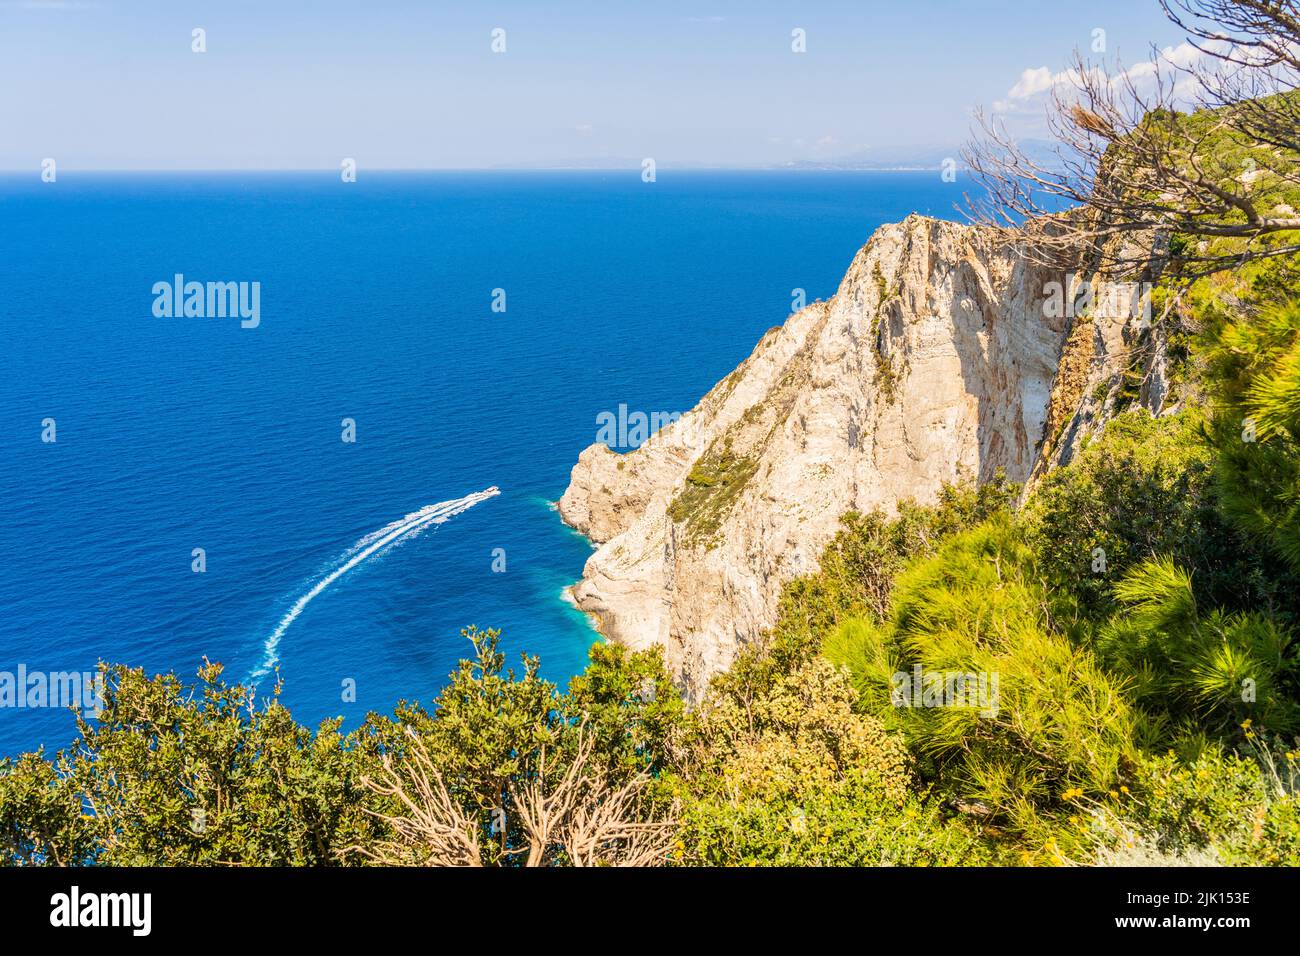 Sea Cliffs, île de Zakynthos, Iles grecques, Grèce, Europe Banque D'Images